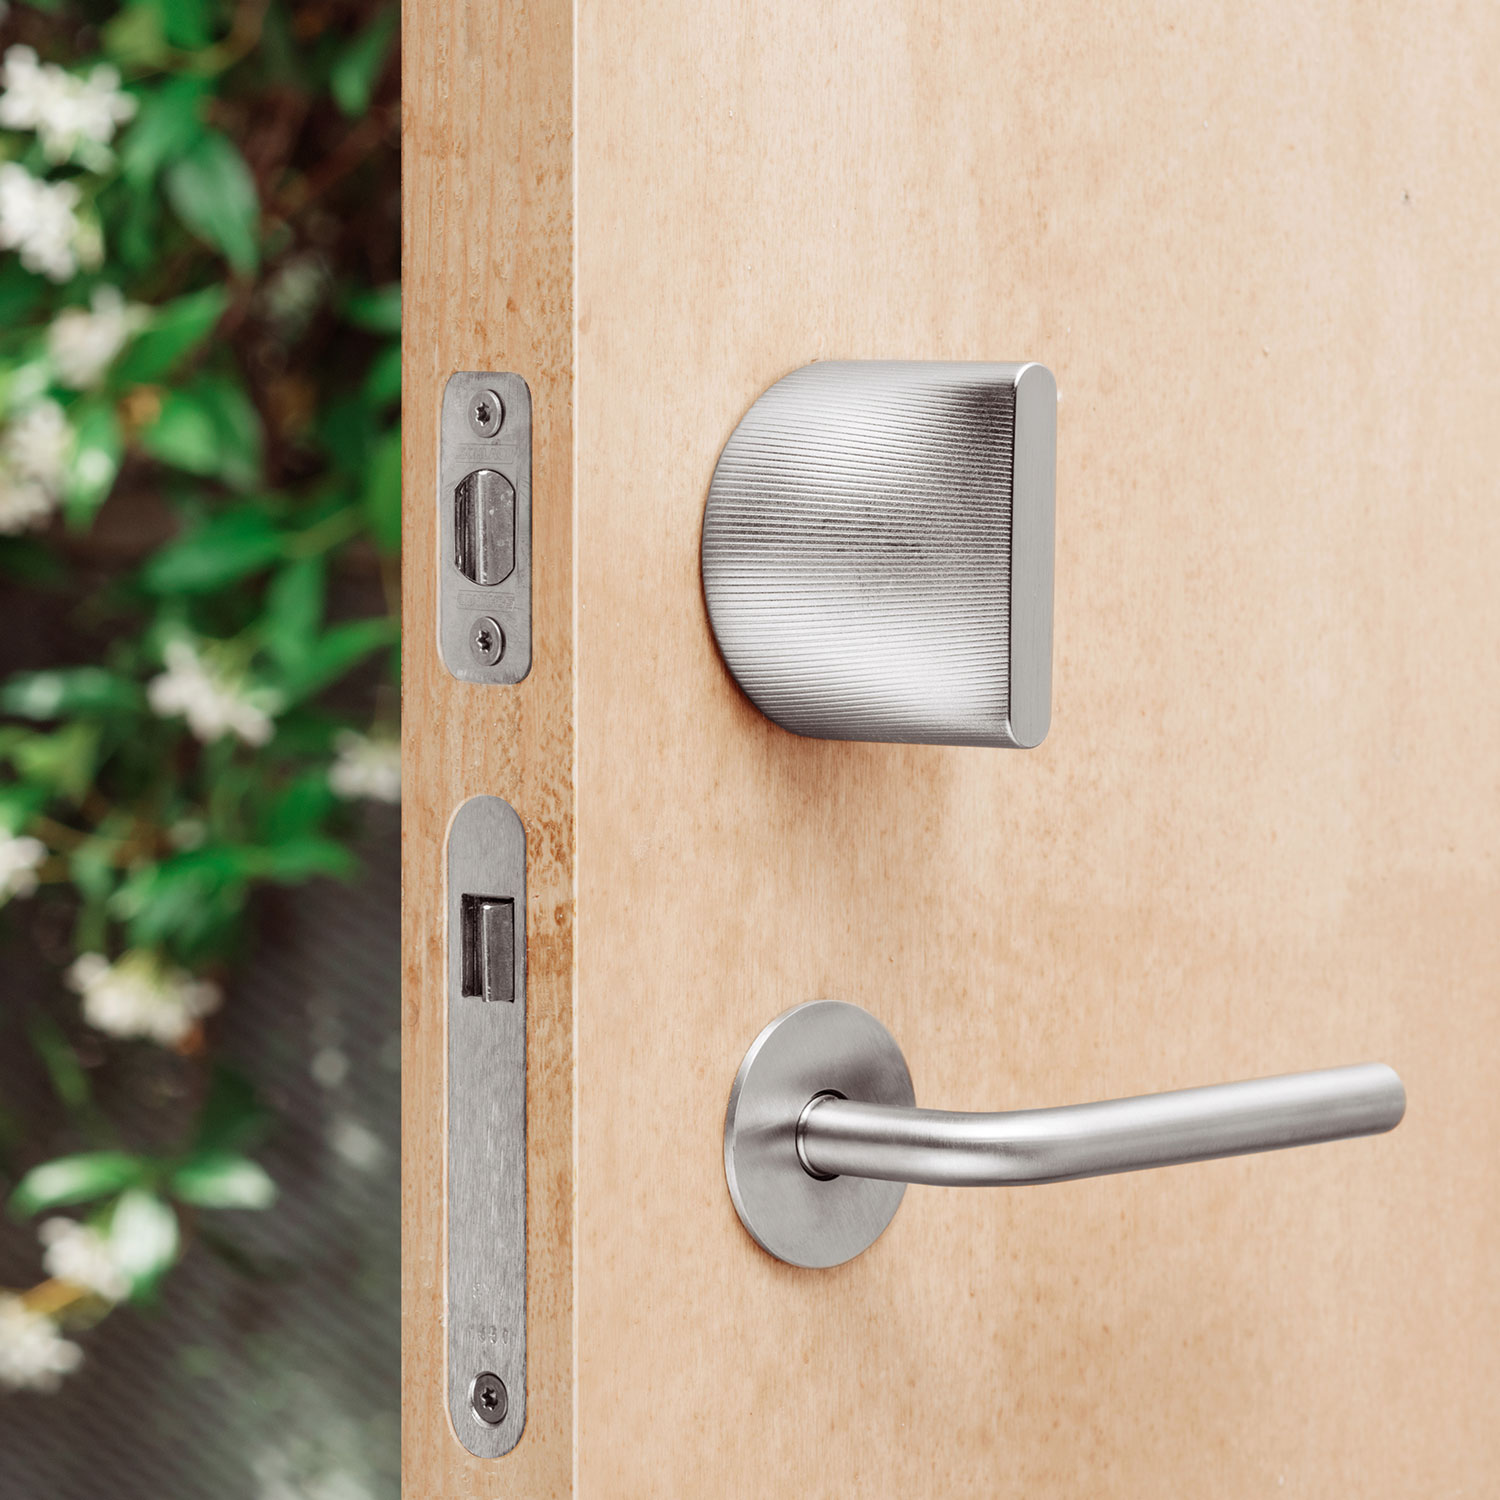 Friday Smart Door Lock - HomeKit Enabled - Mac Prices Australia